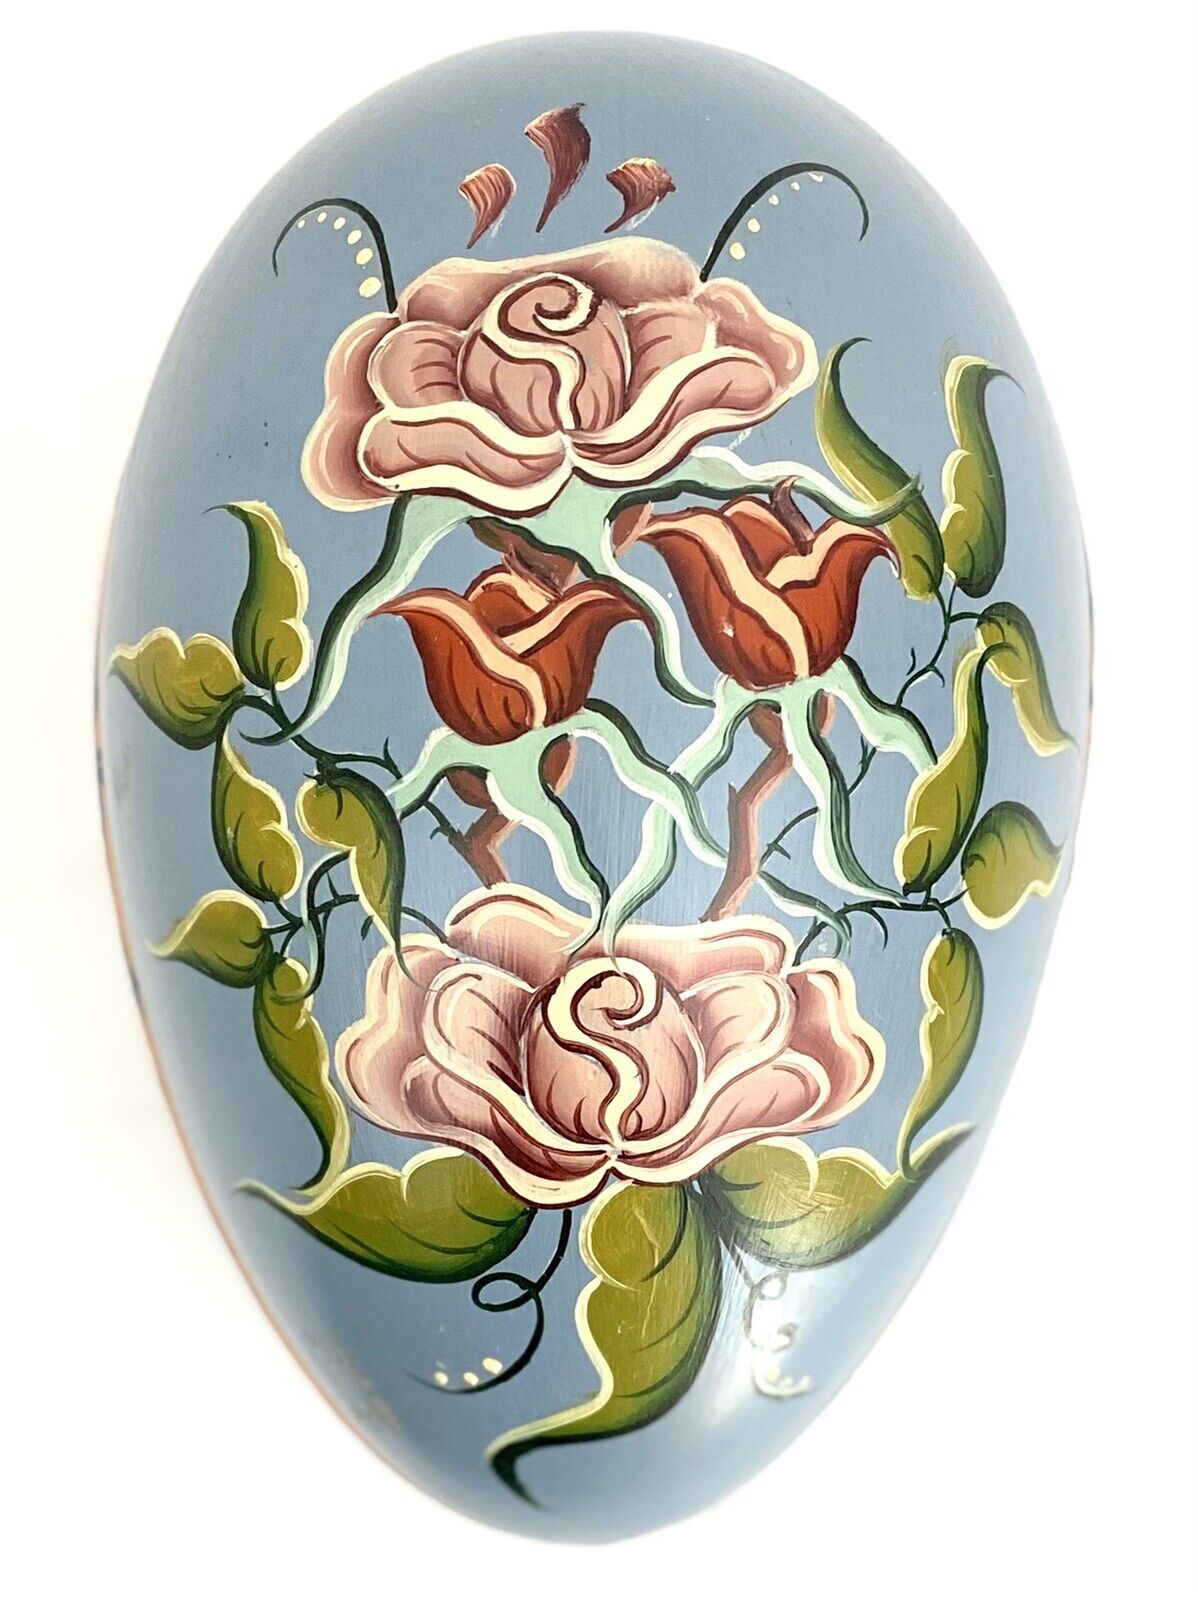 Beautiful Norwegian Rosemaling Hand painted Decorative Ceramic Easter Egg